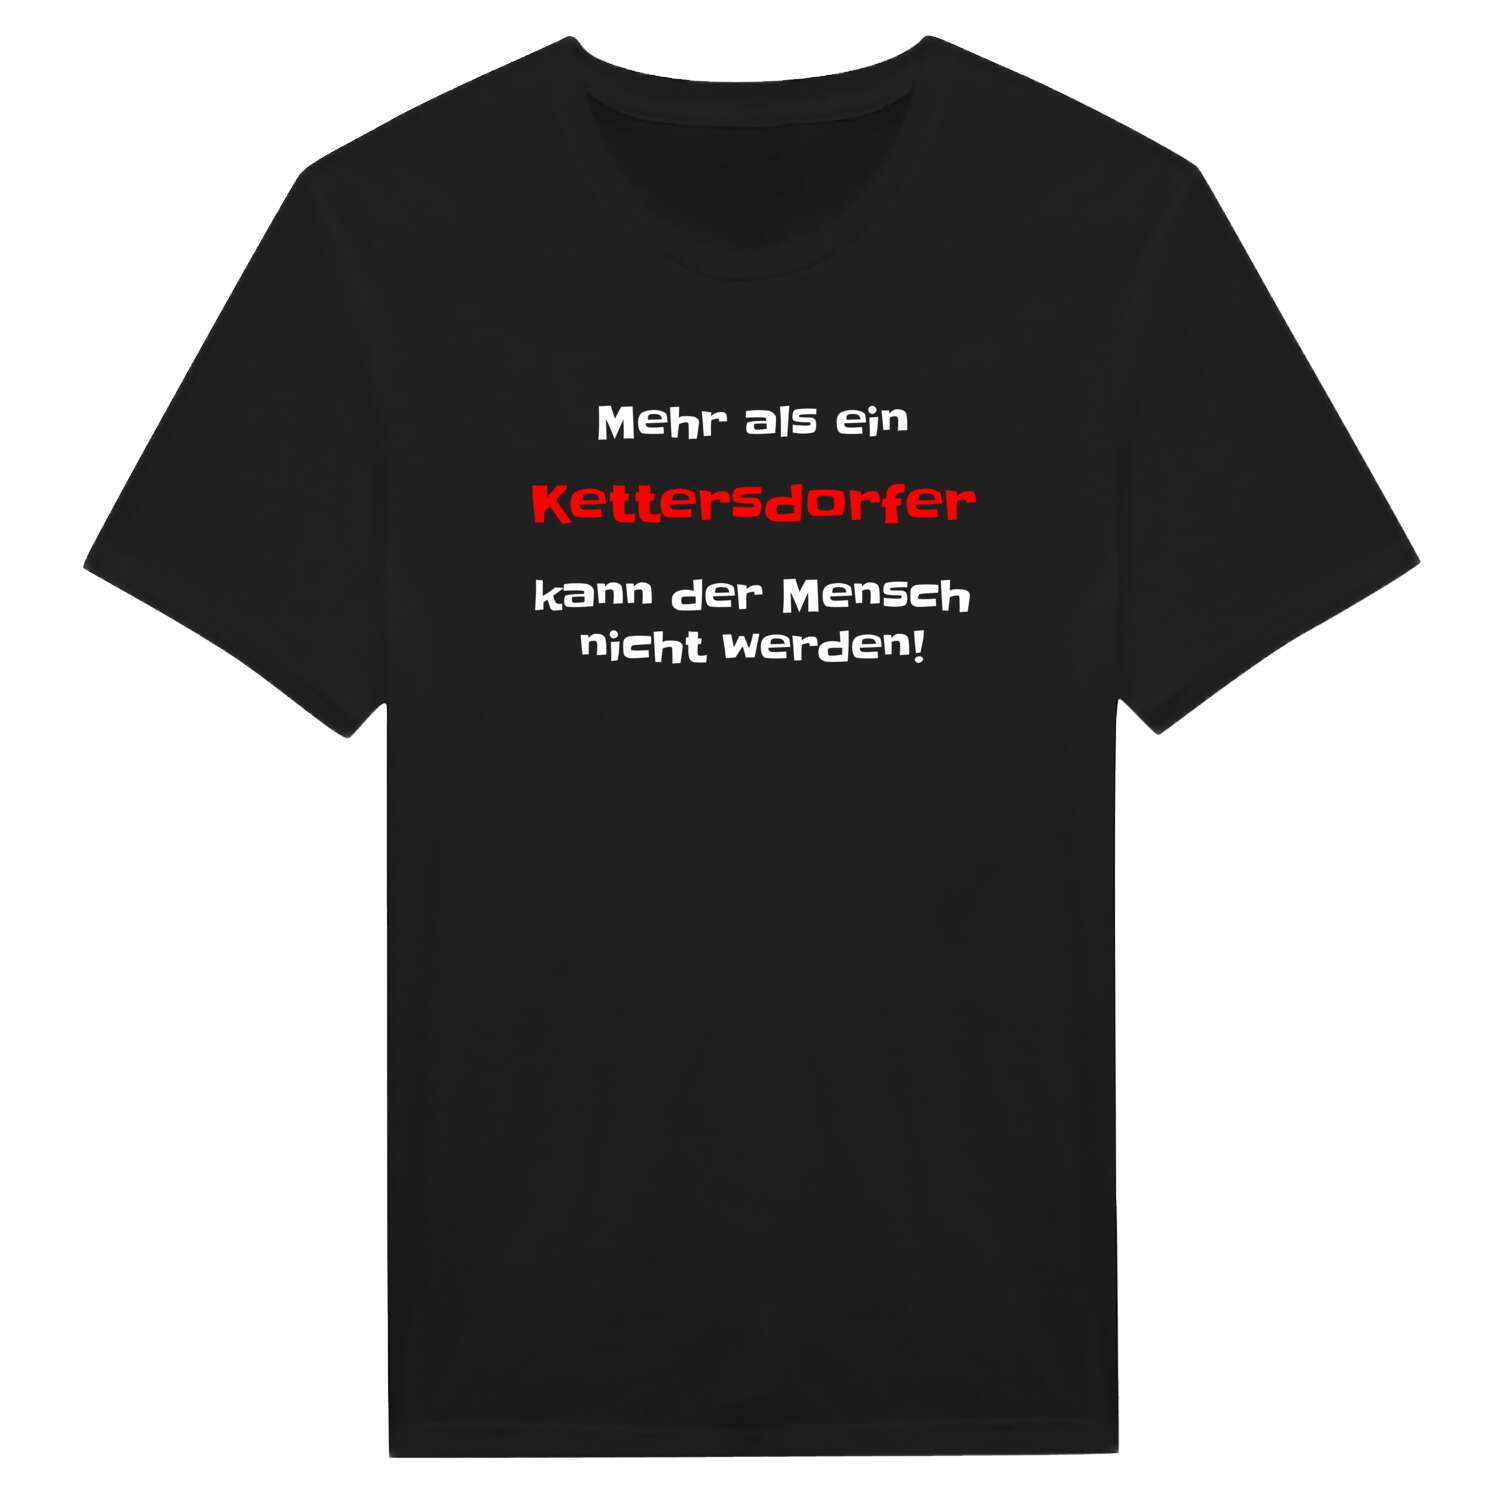 Kettersdorf T-Shirt »Mehr als ein«